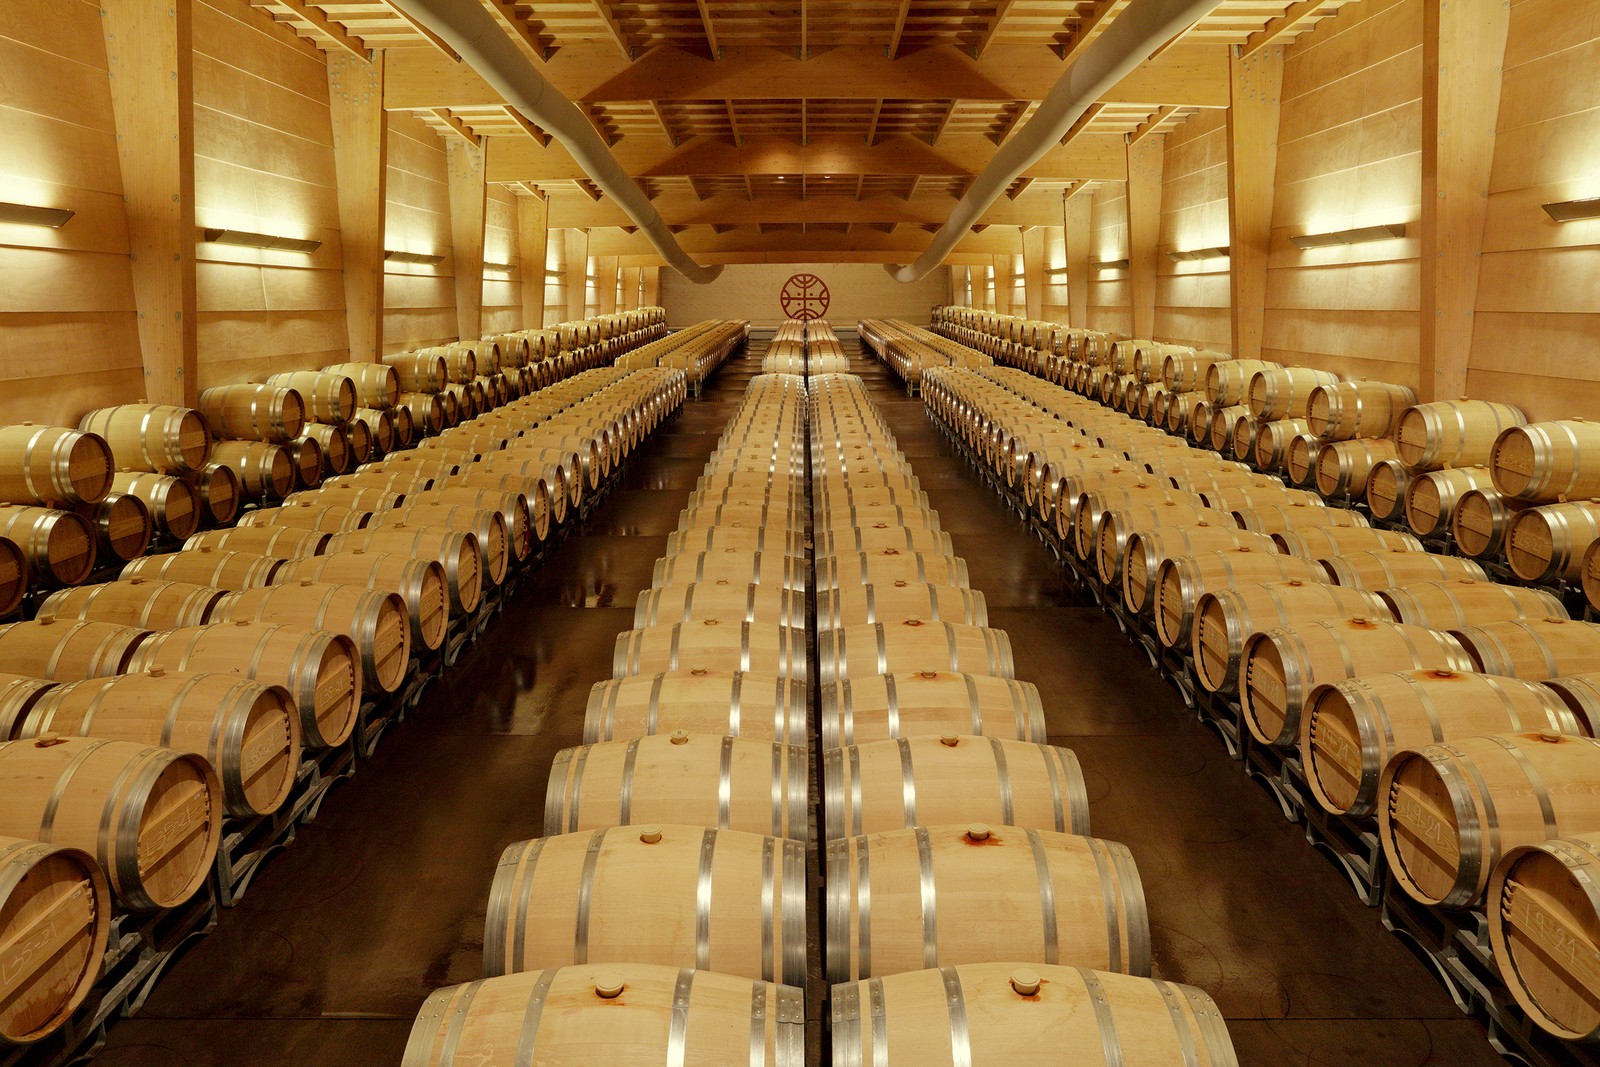 O grand chai impressiona: mais de 500 barricas onde o vinho estagia — Foto: Divulgação